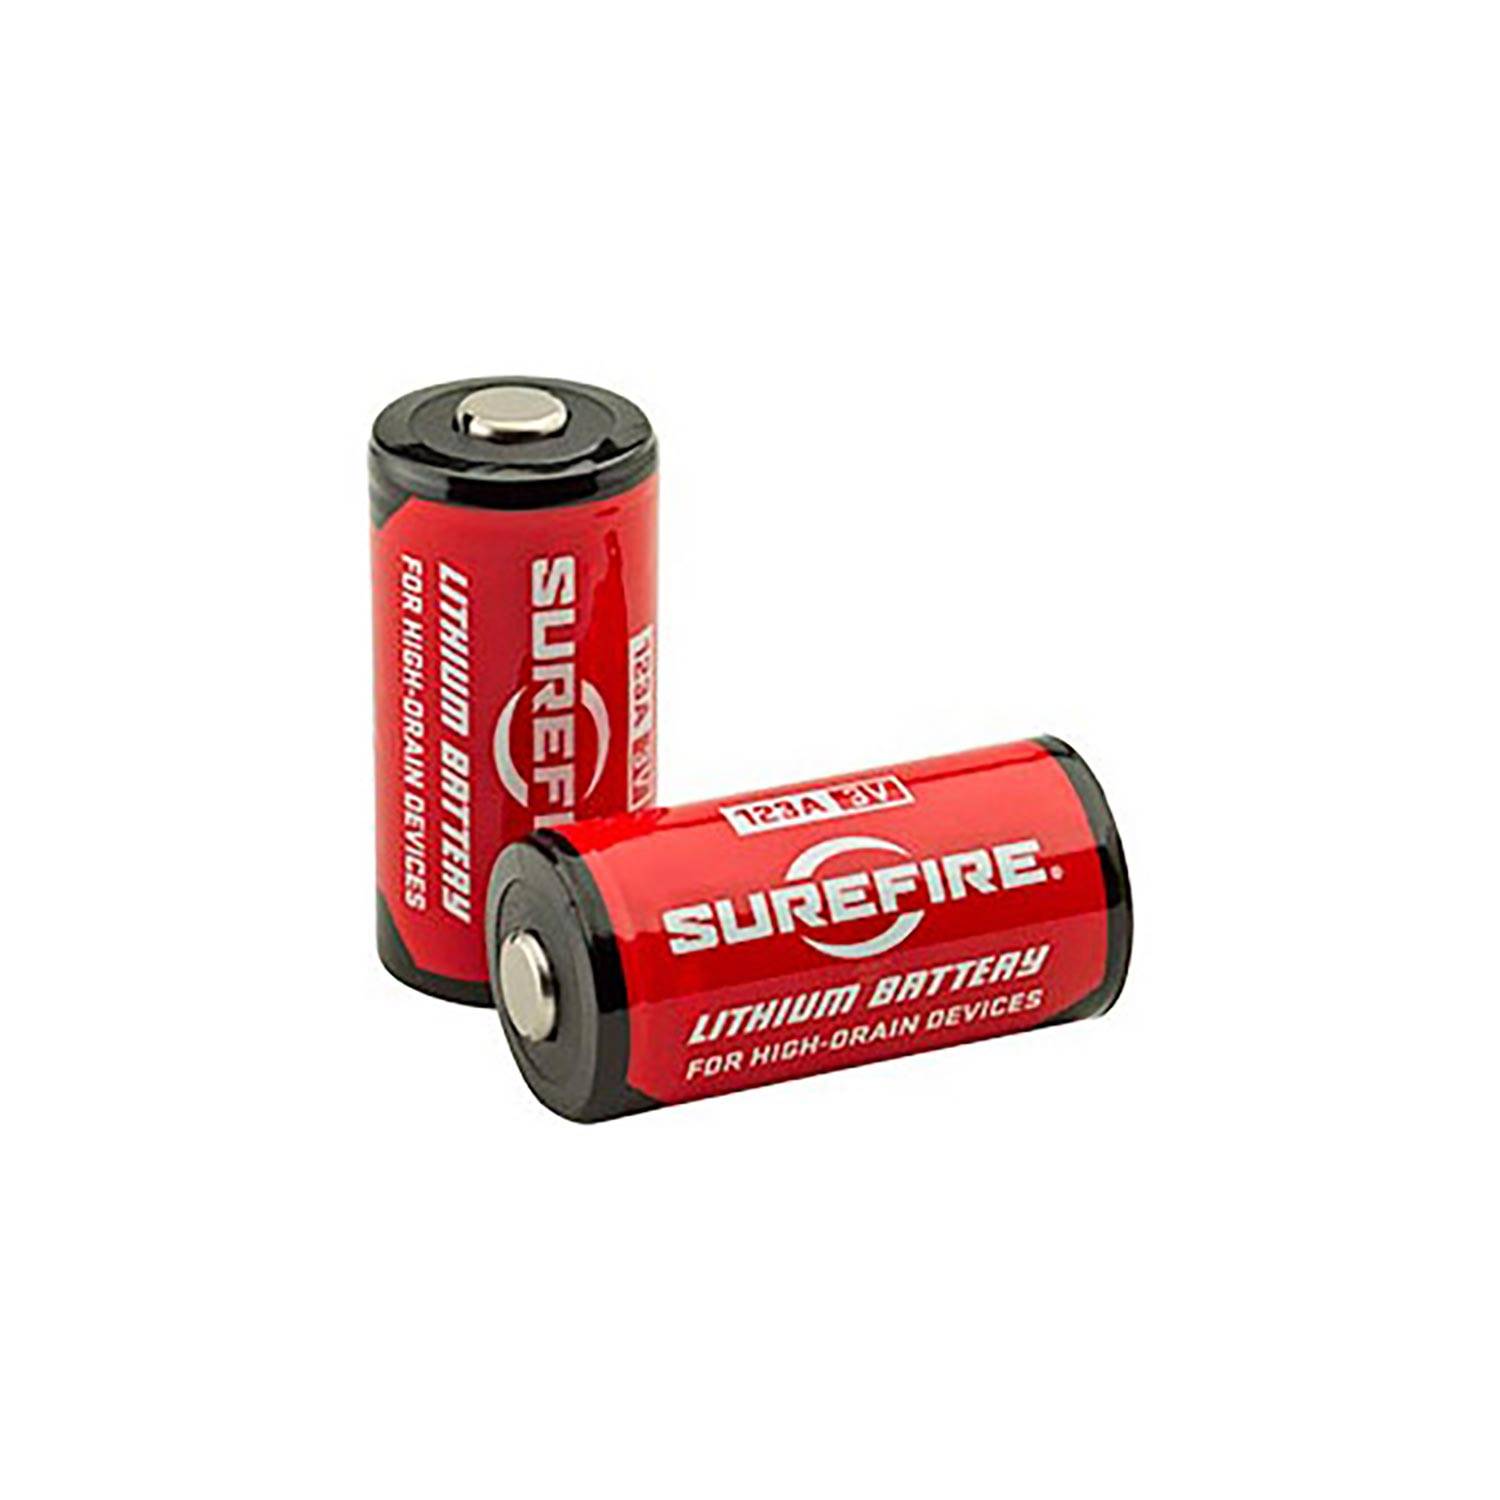 SureFire 123A Lithium Batteries (6 Pack)